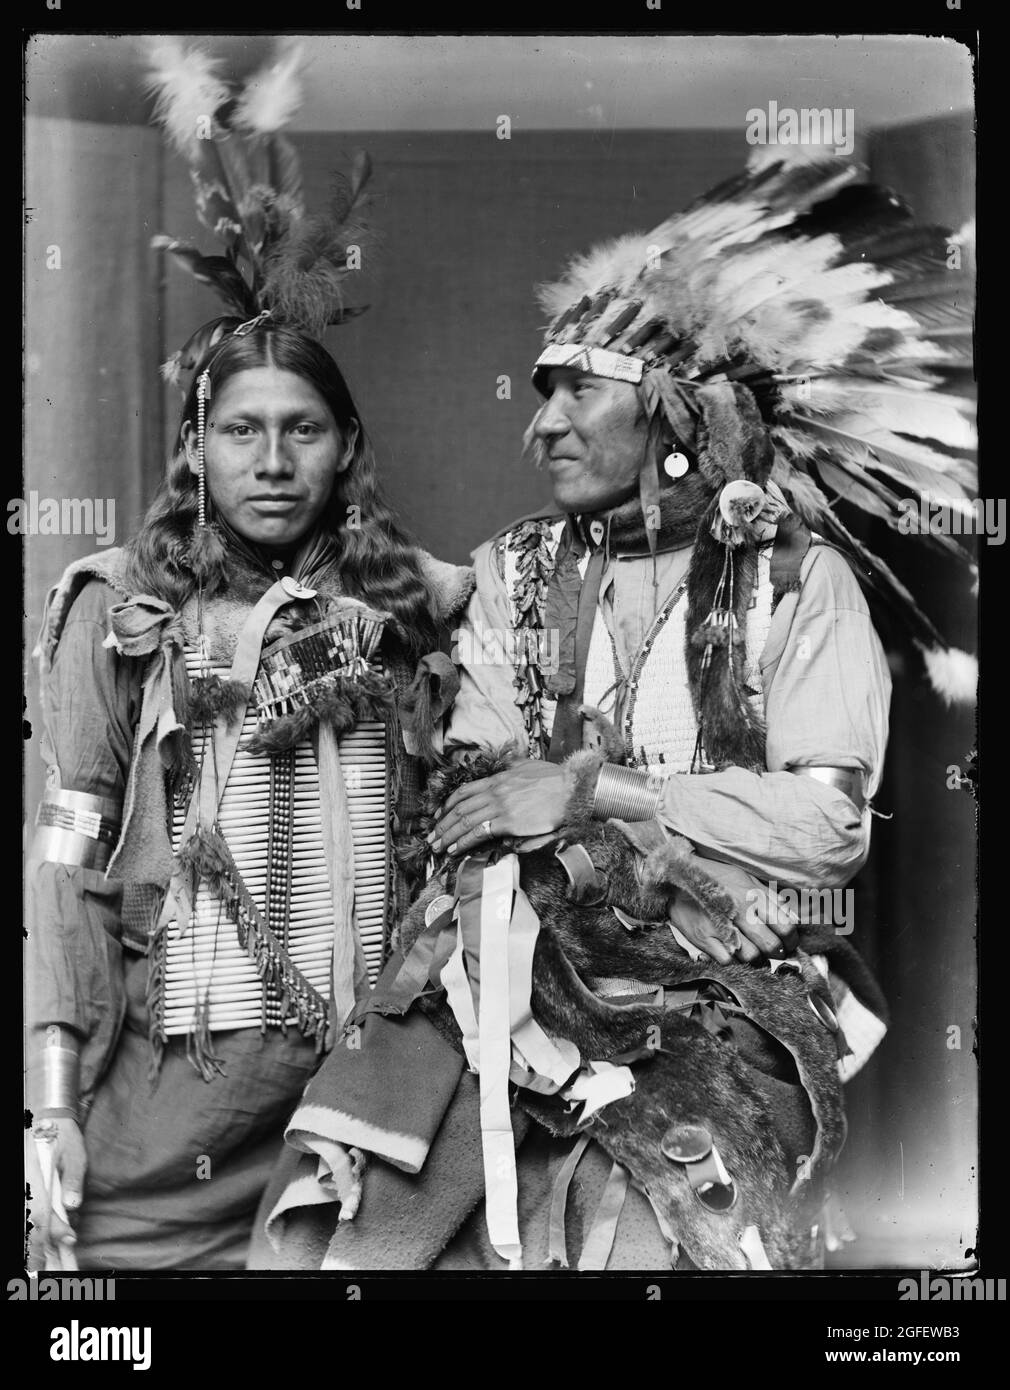 Santo fra- sinistra e Big Turnips, nativi americani / indiani americani. Probabilmente membri del Buffalo Bill's Wild West Show. C 1900. Foto Stock